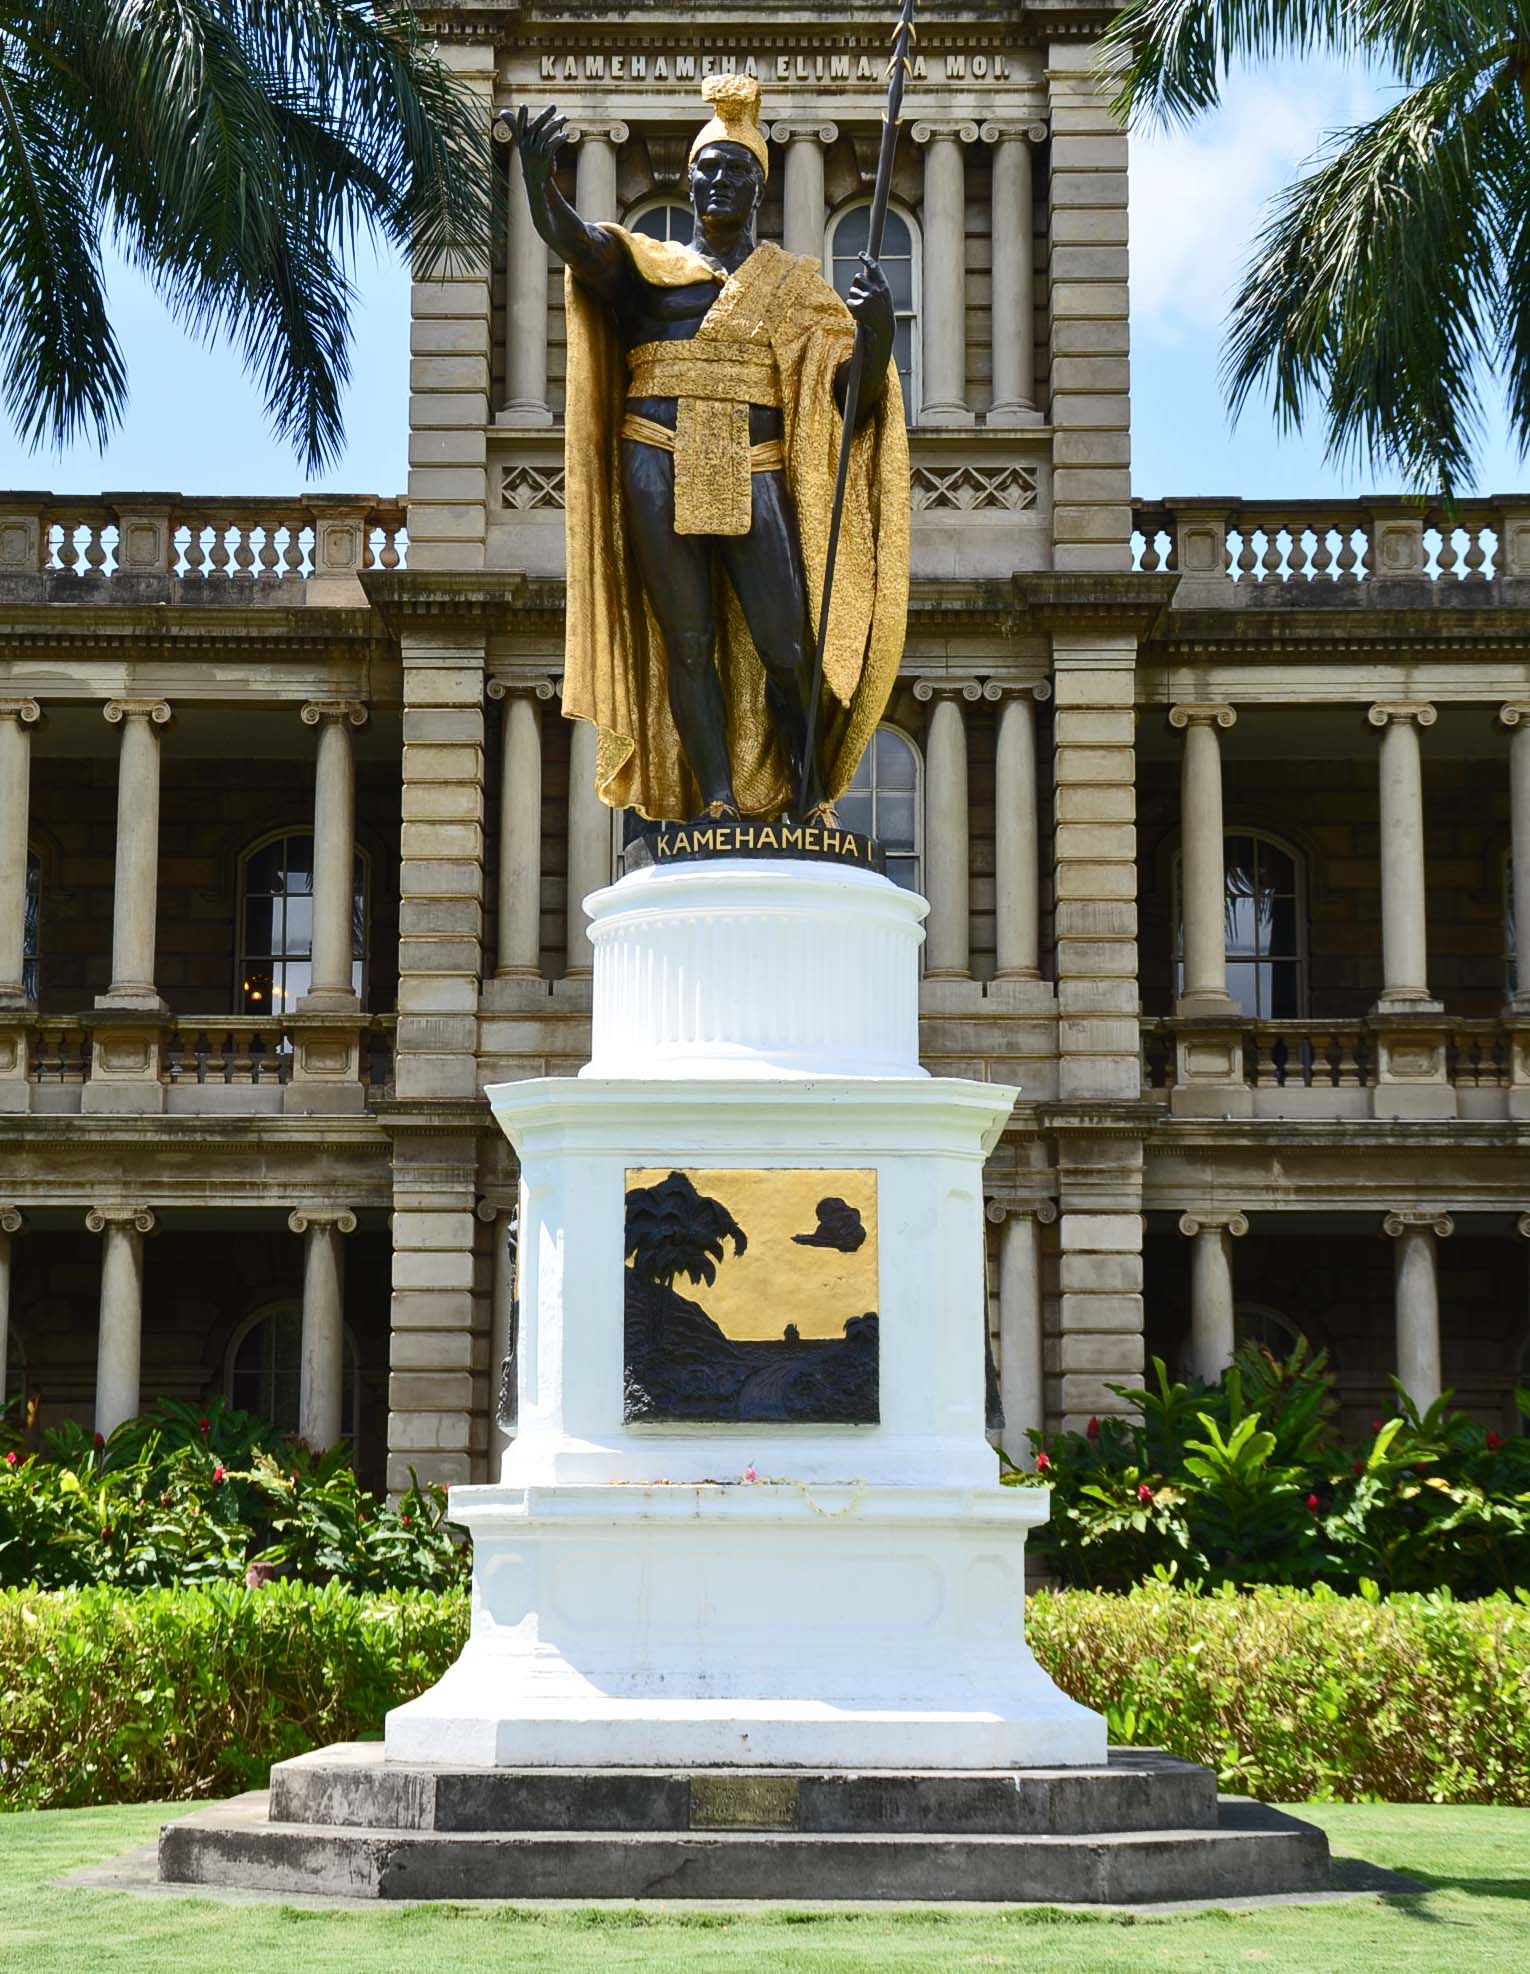 King Kanehameha Statue